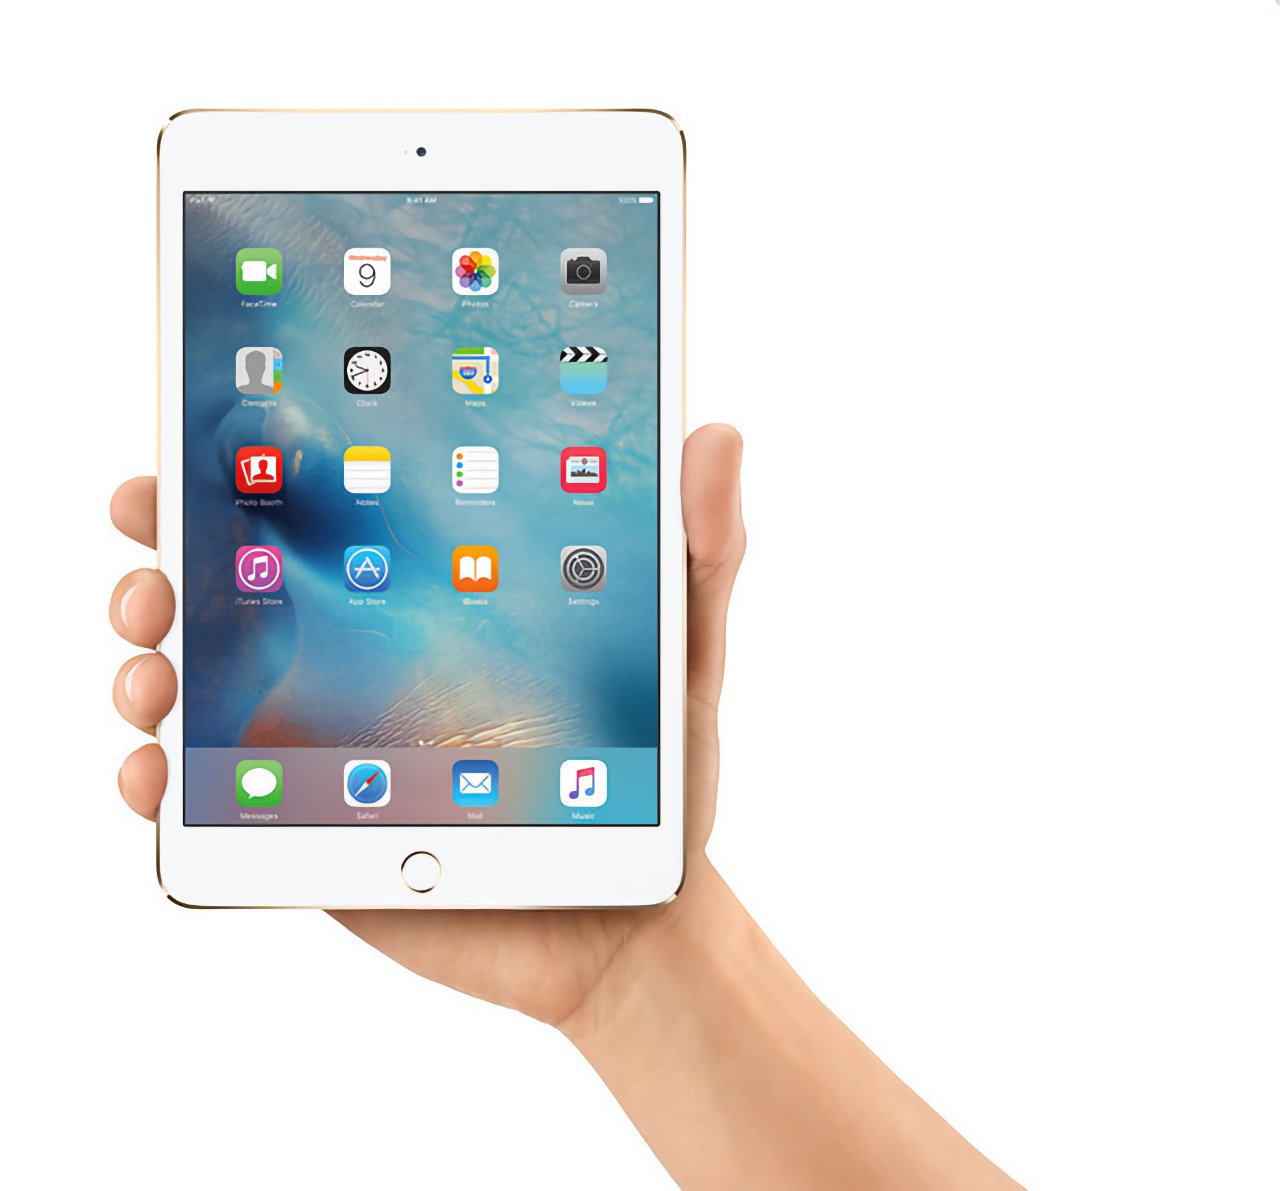 Das iPad mini kam 2012 auf den Markt und wir erfuhren, dass wir nie wieder davon hören würden